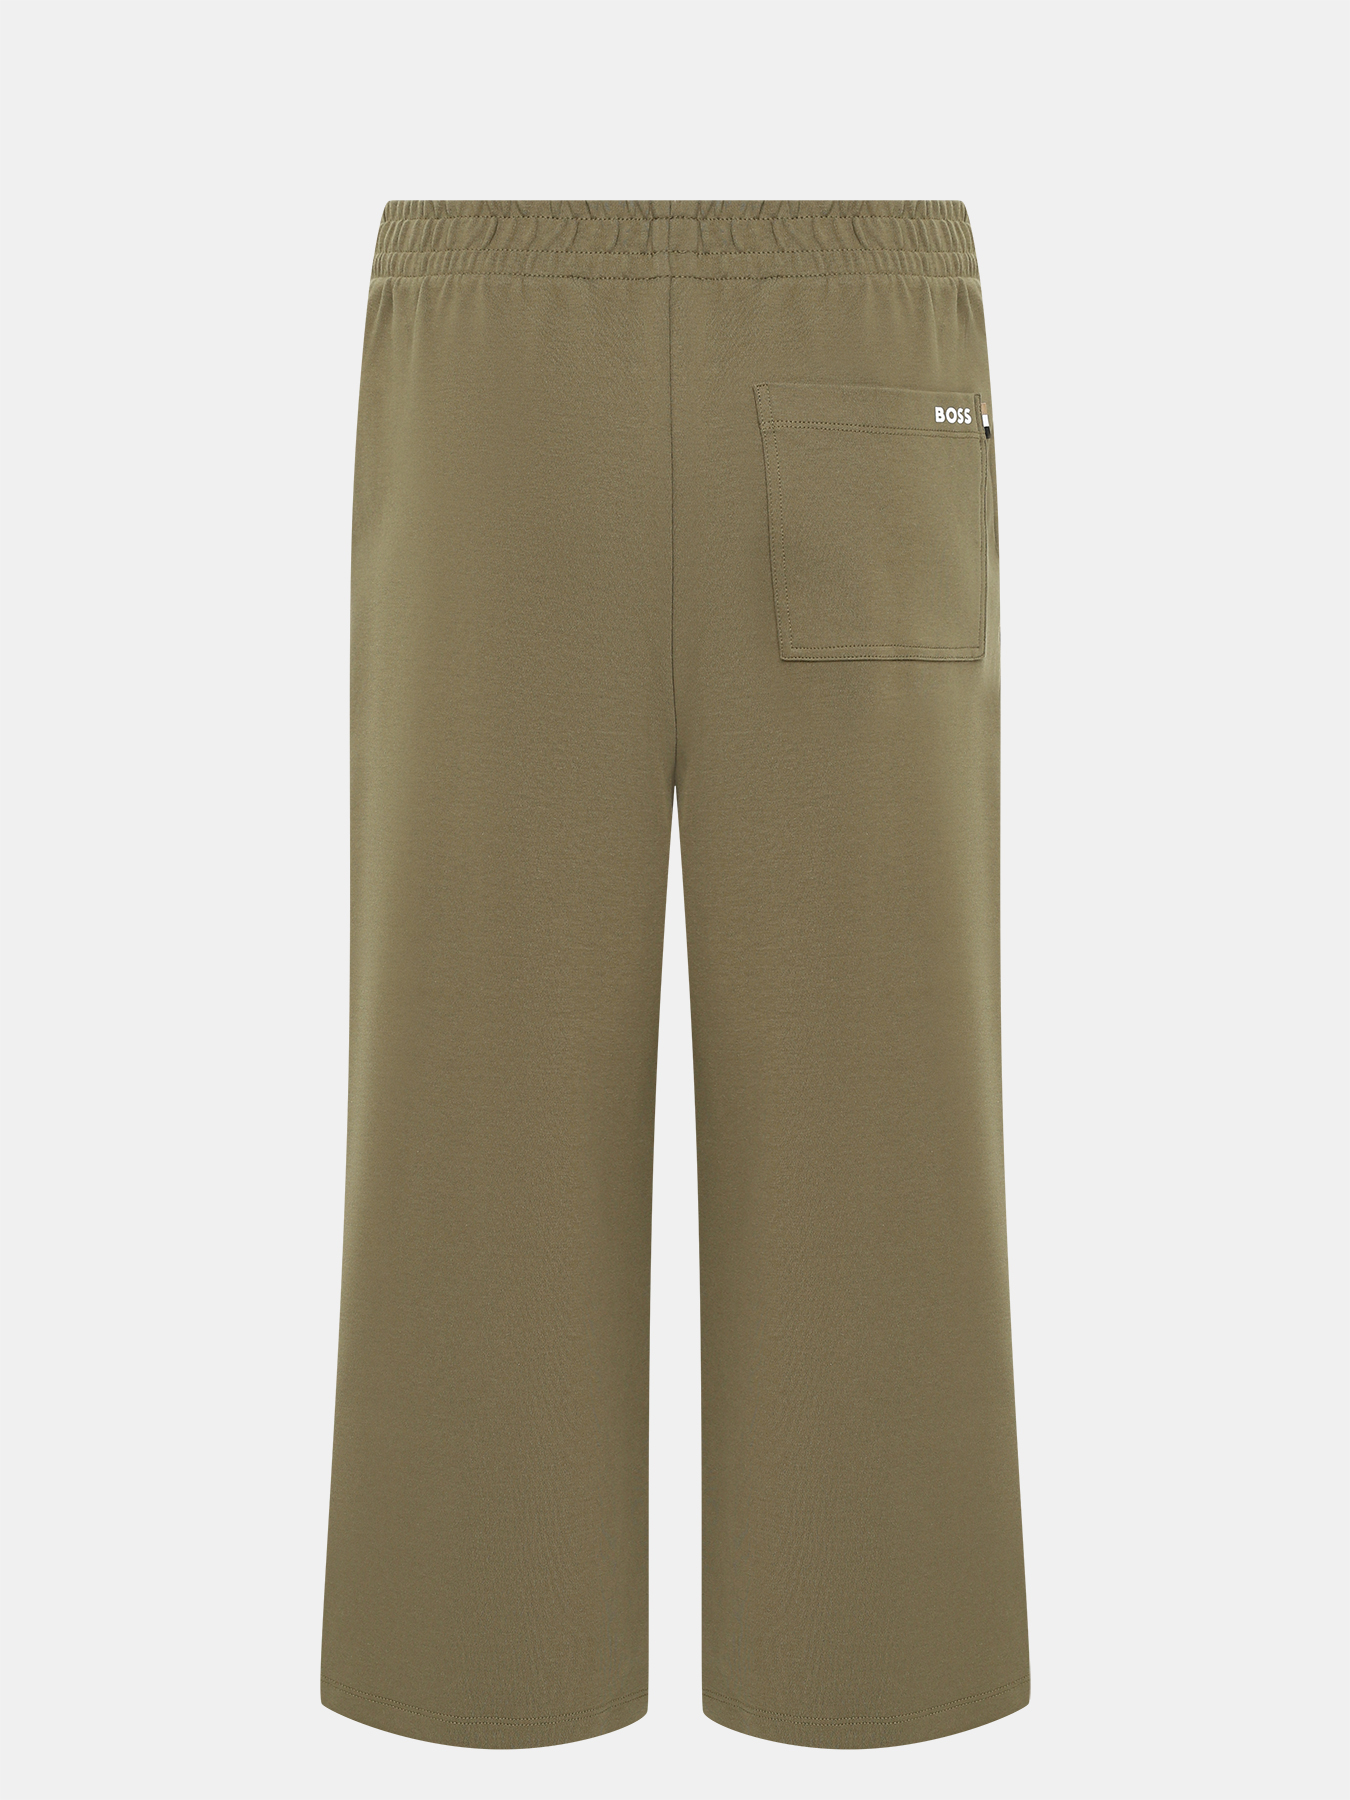 Спортивные брюки Enatea BOSS 414132-041, цвет хаки, размер 40-42 - фото 2